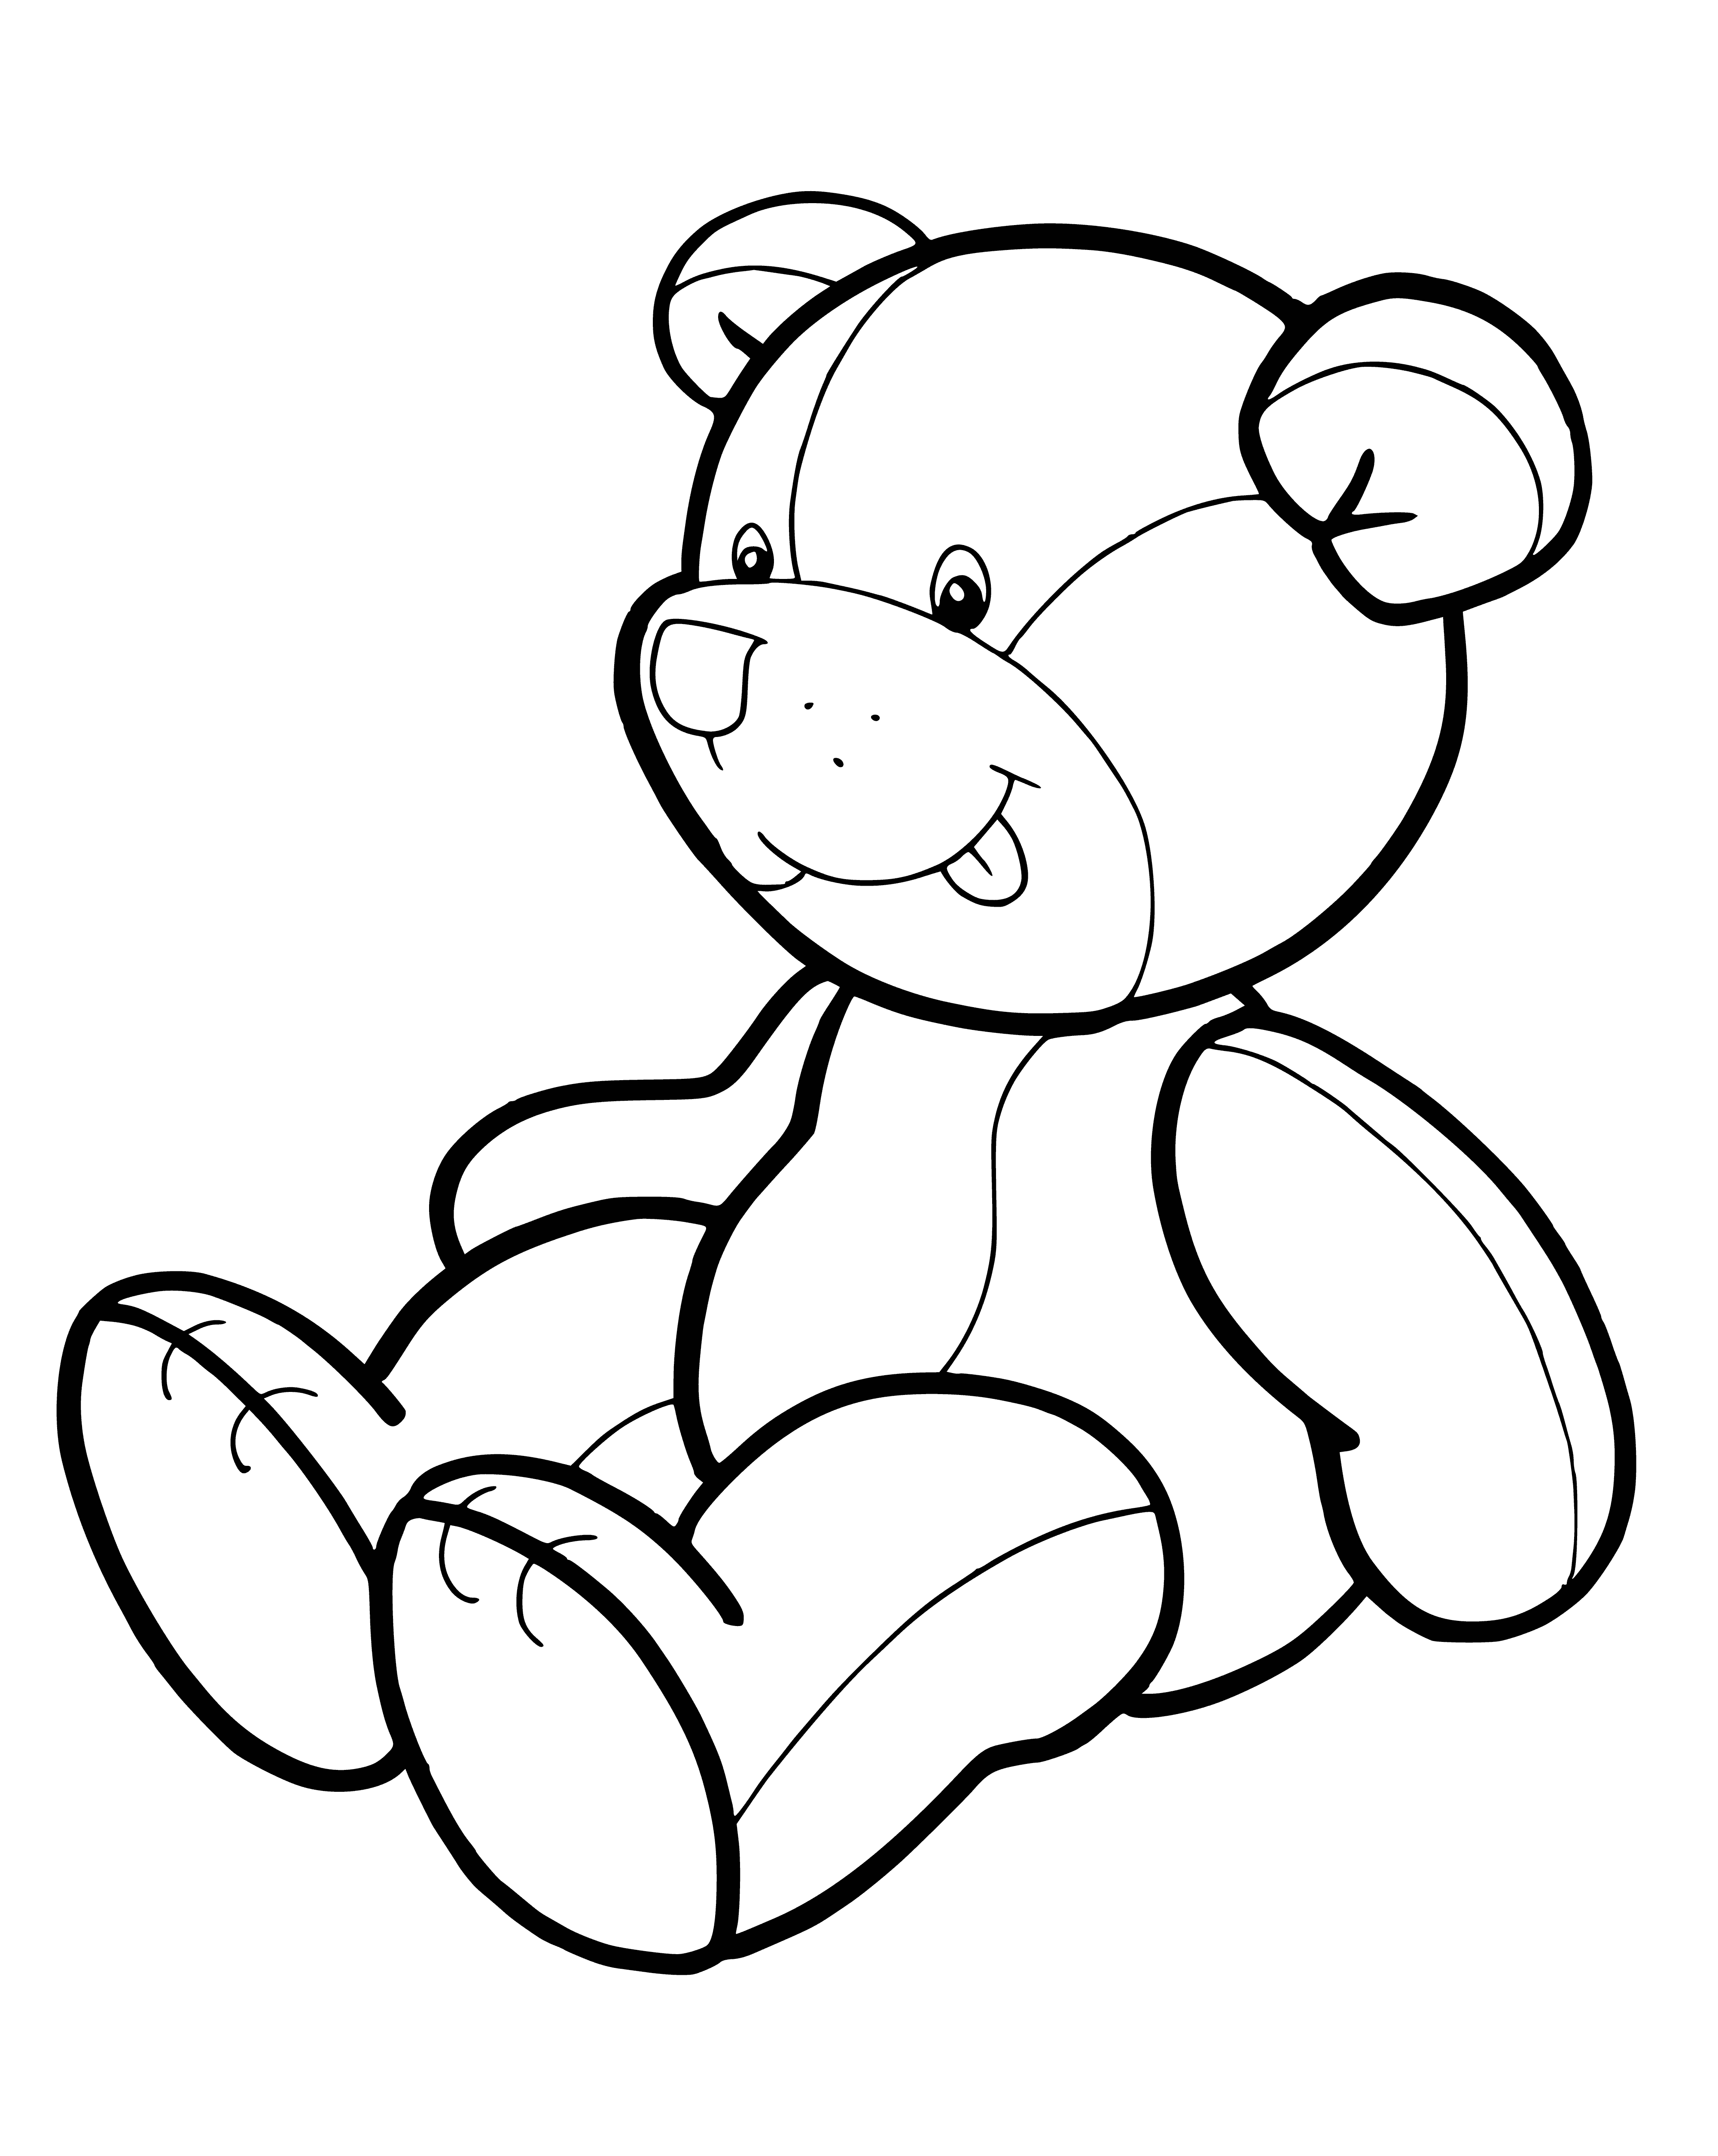 Напечатать игрушки. Раскраска. Медвежонок. Раскраска "мишки". Медвежонок раскраска для детей. Мишка раскраска для малышей.